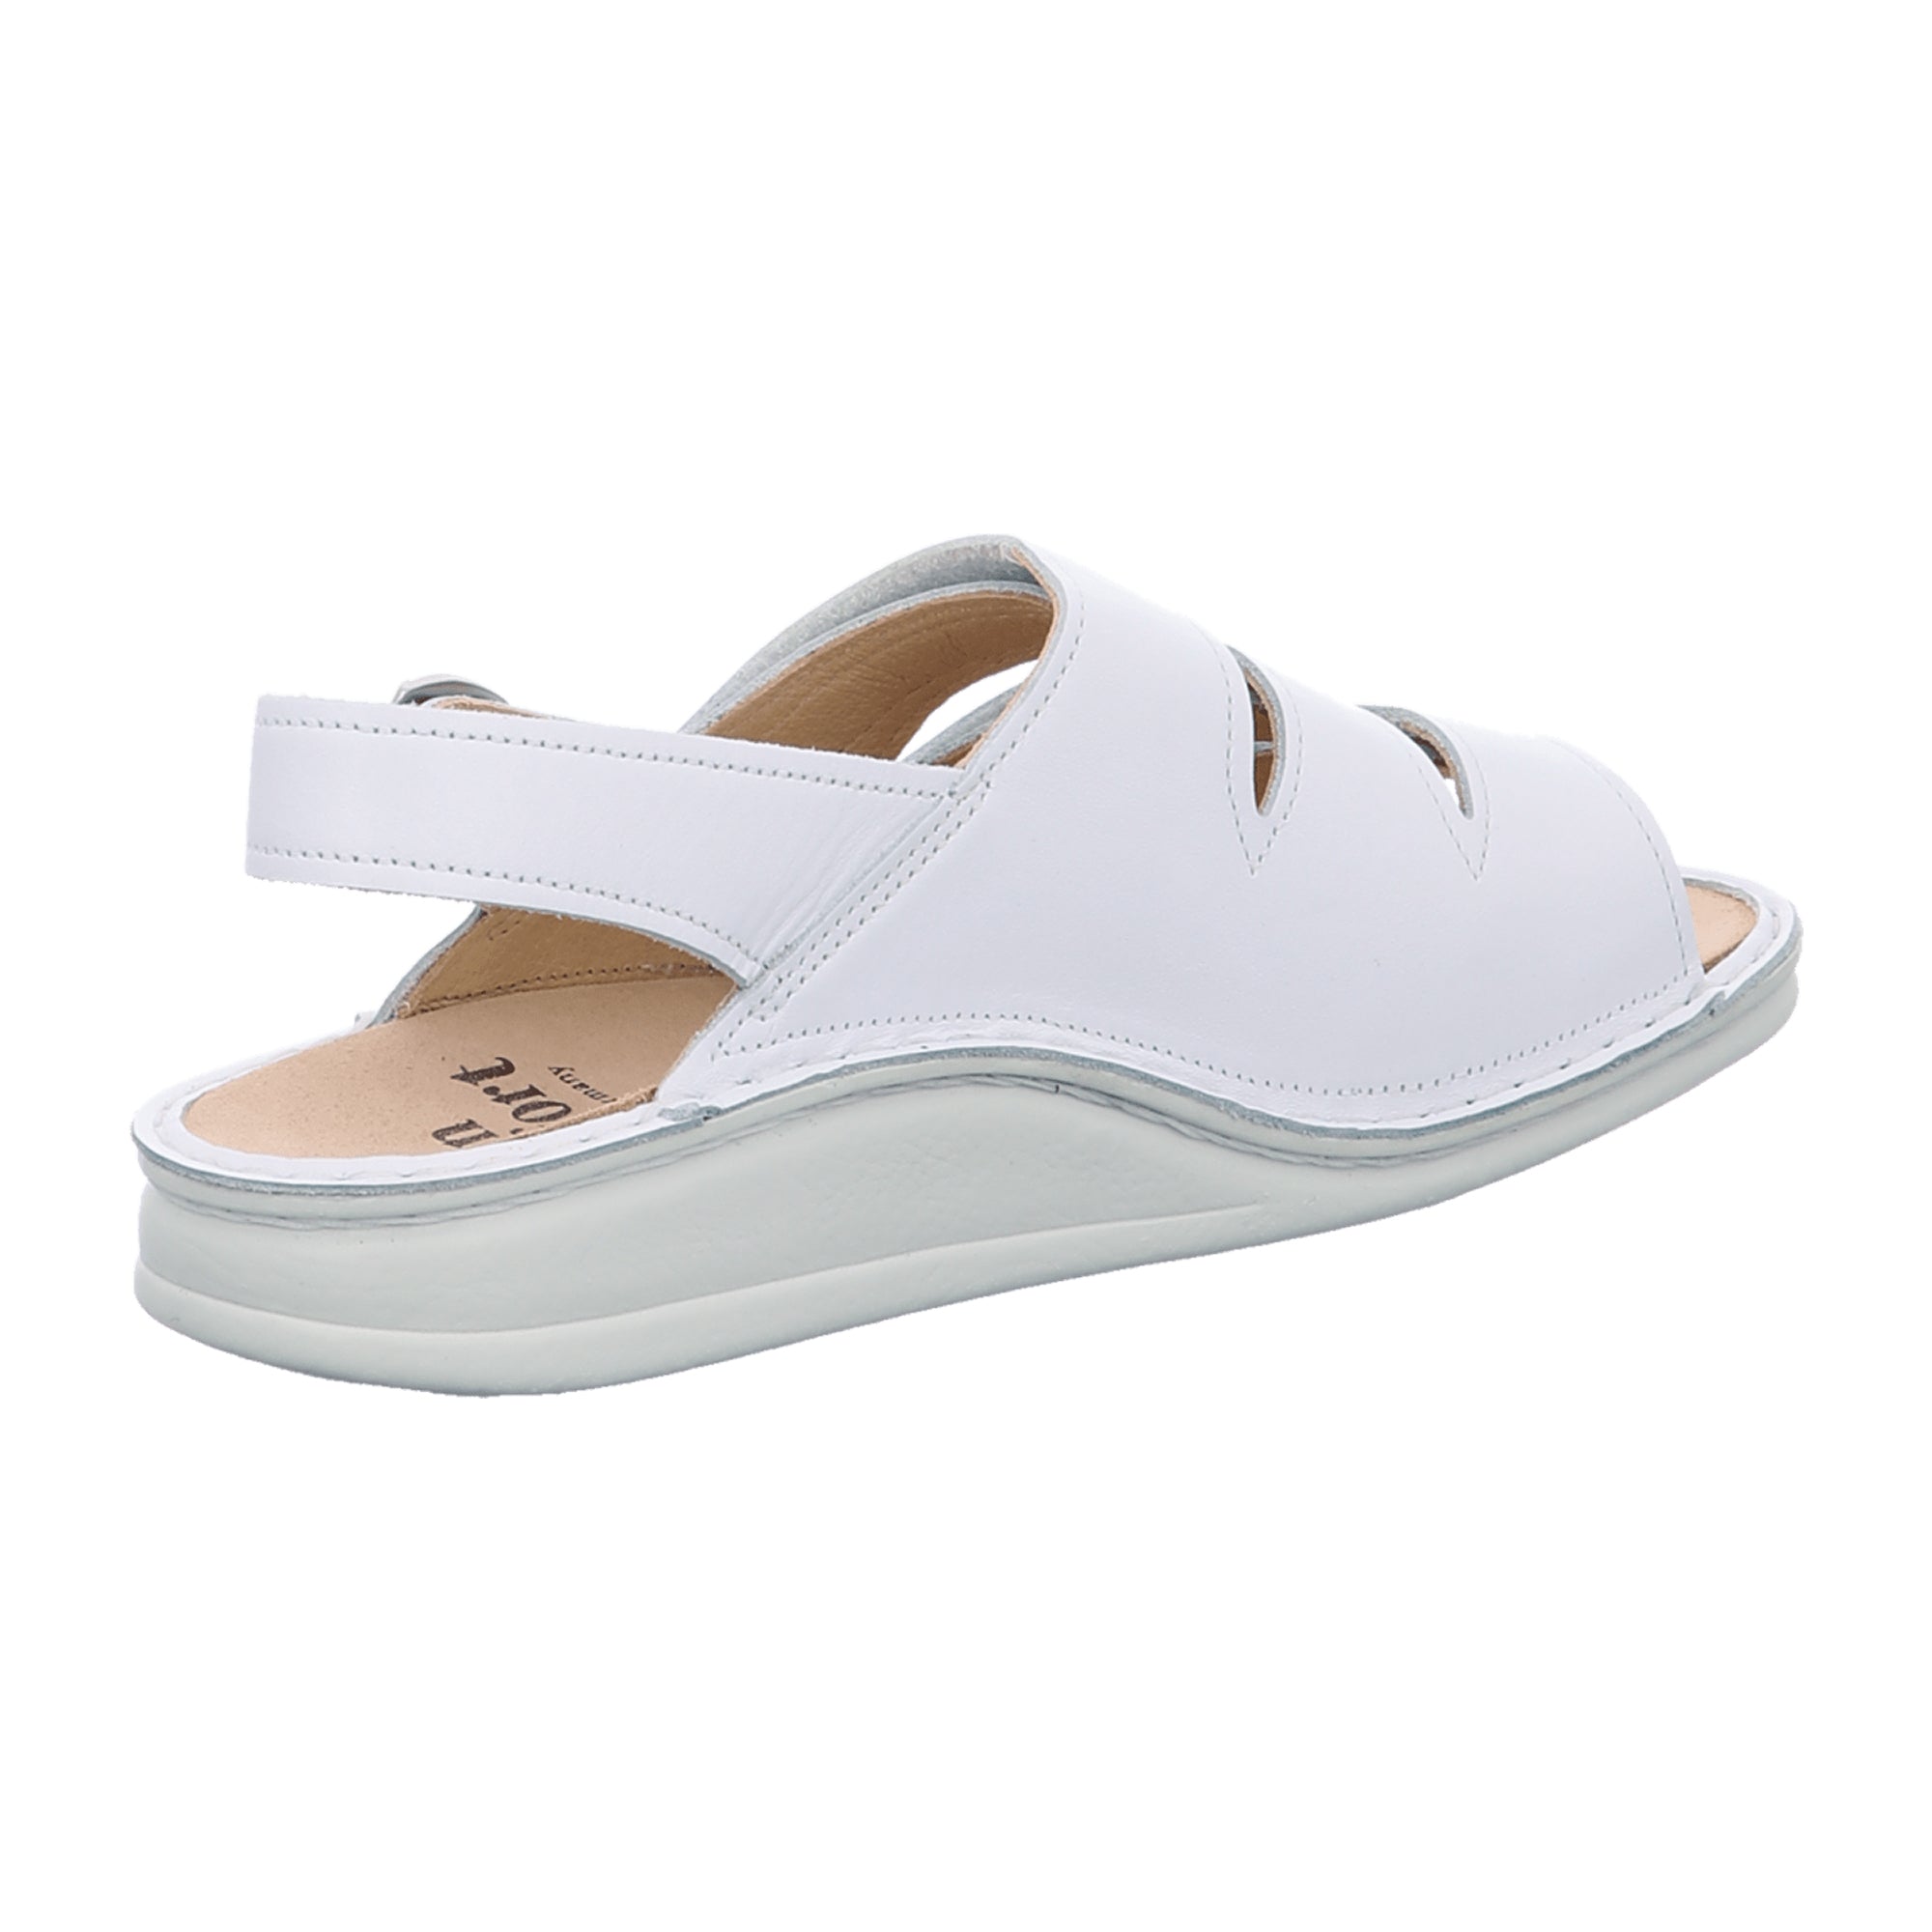 Finn Comfort Sylt Women's Comfort Sandals - White